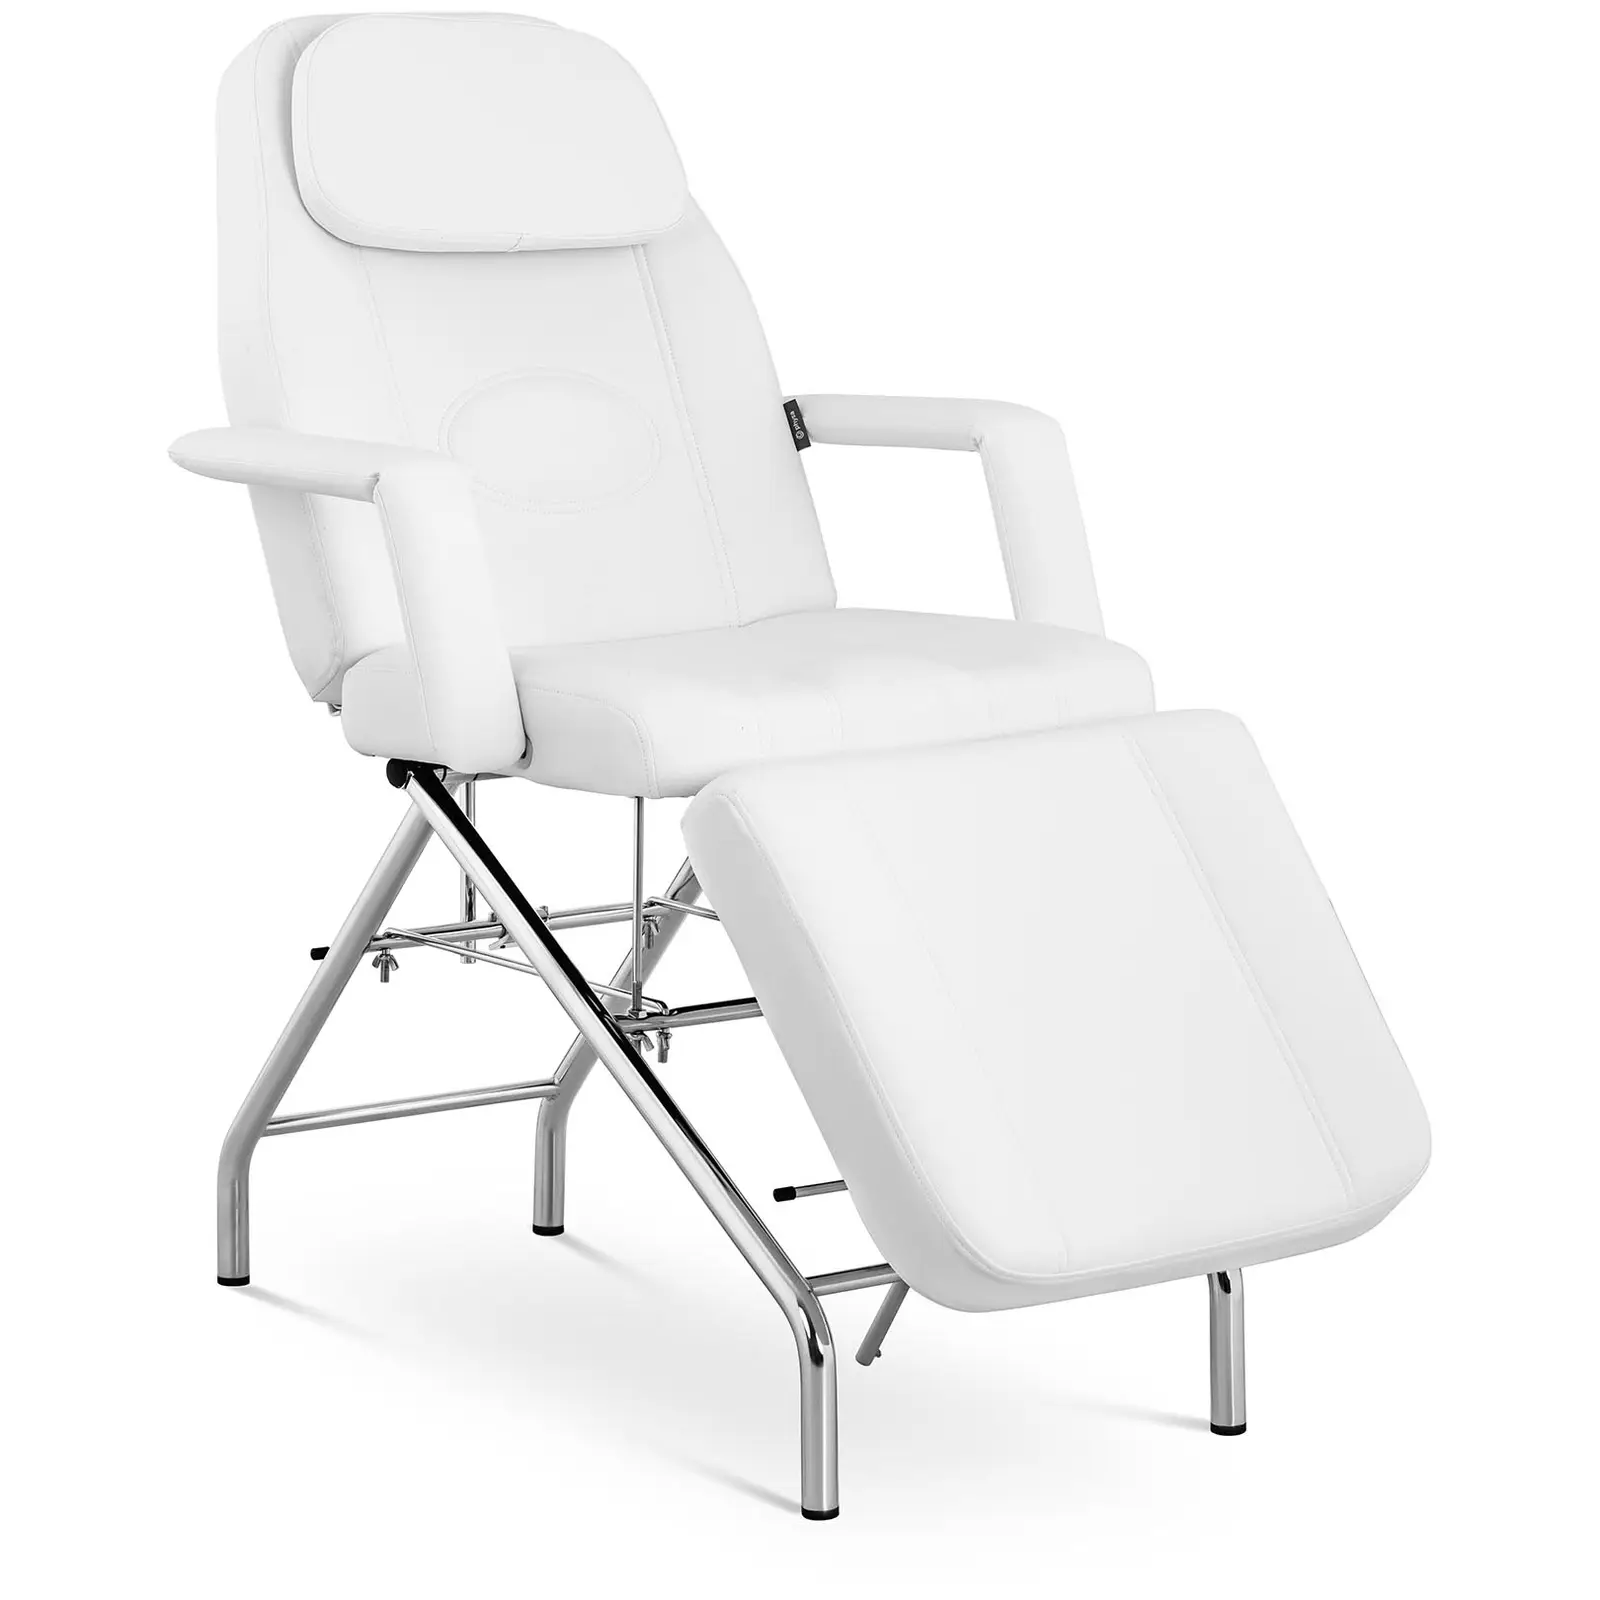 Cadeira para cosmética - 180 x 82.5 x 73 cm - 175 kg - White